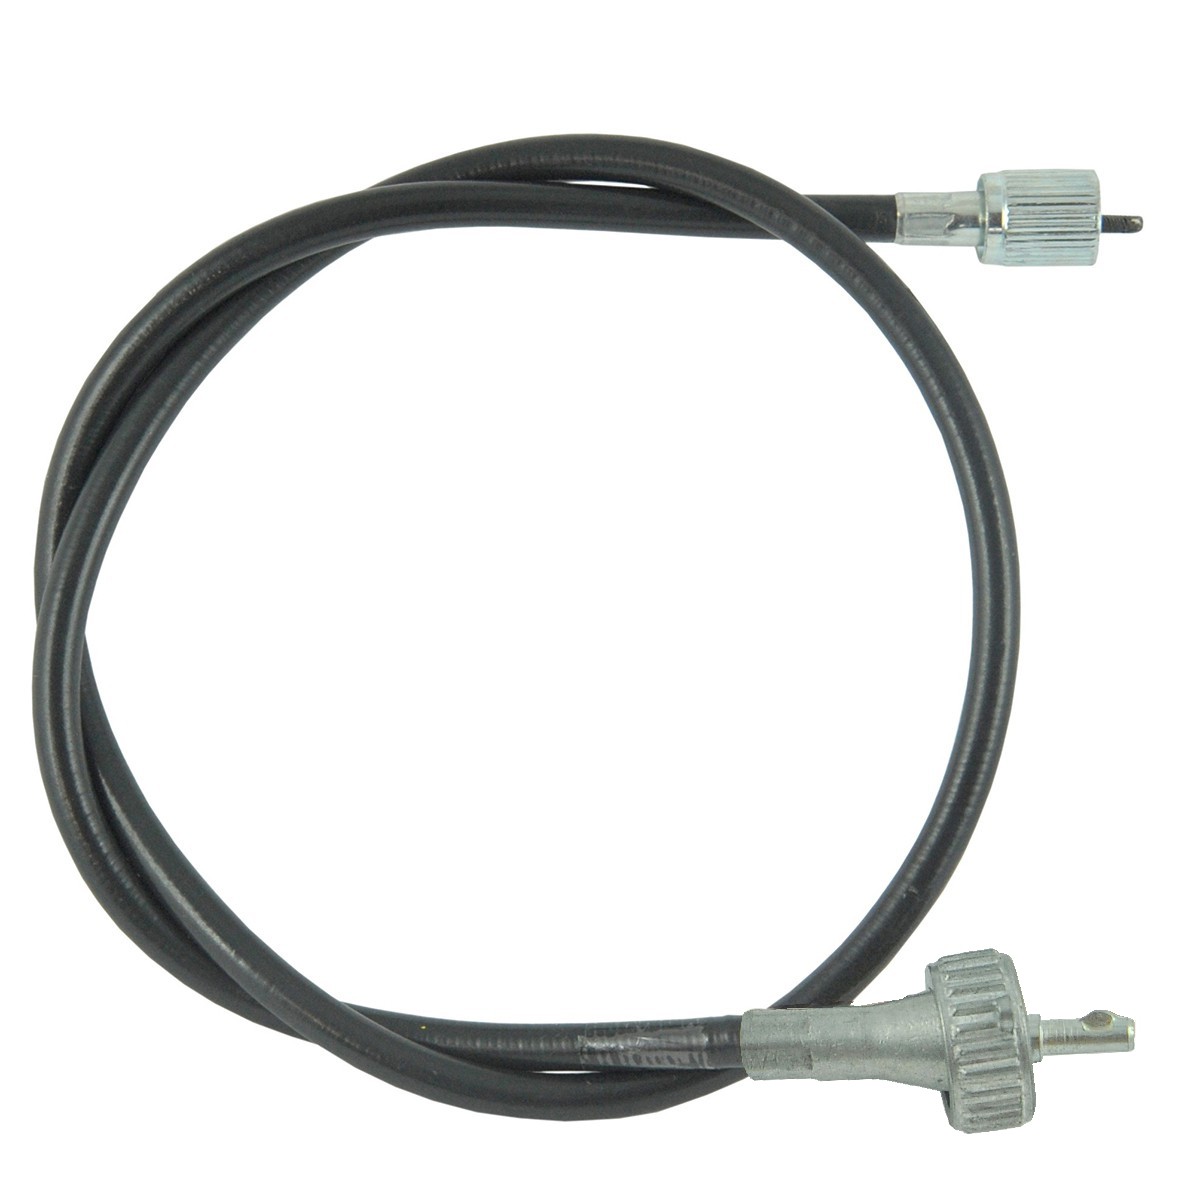 Cable contador / 880 mm / Iseki TE/TL/TS/TU/TX / 1480-621-001-00 / OBMT07B